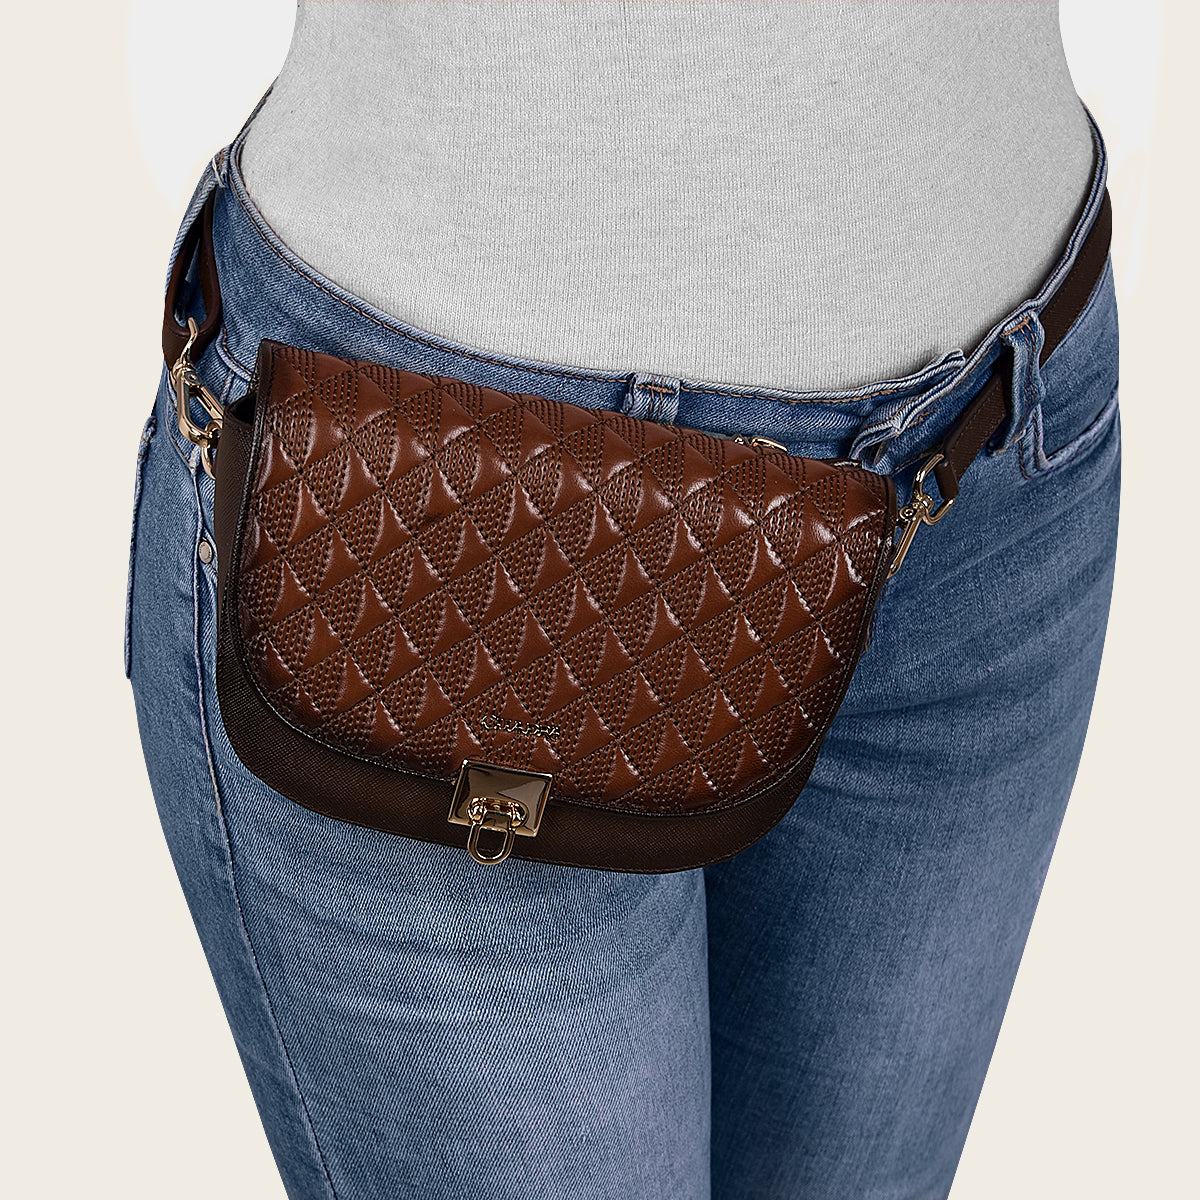 Cinturón de piel color café y bolso bandolera.